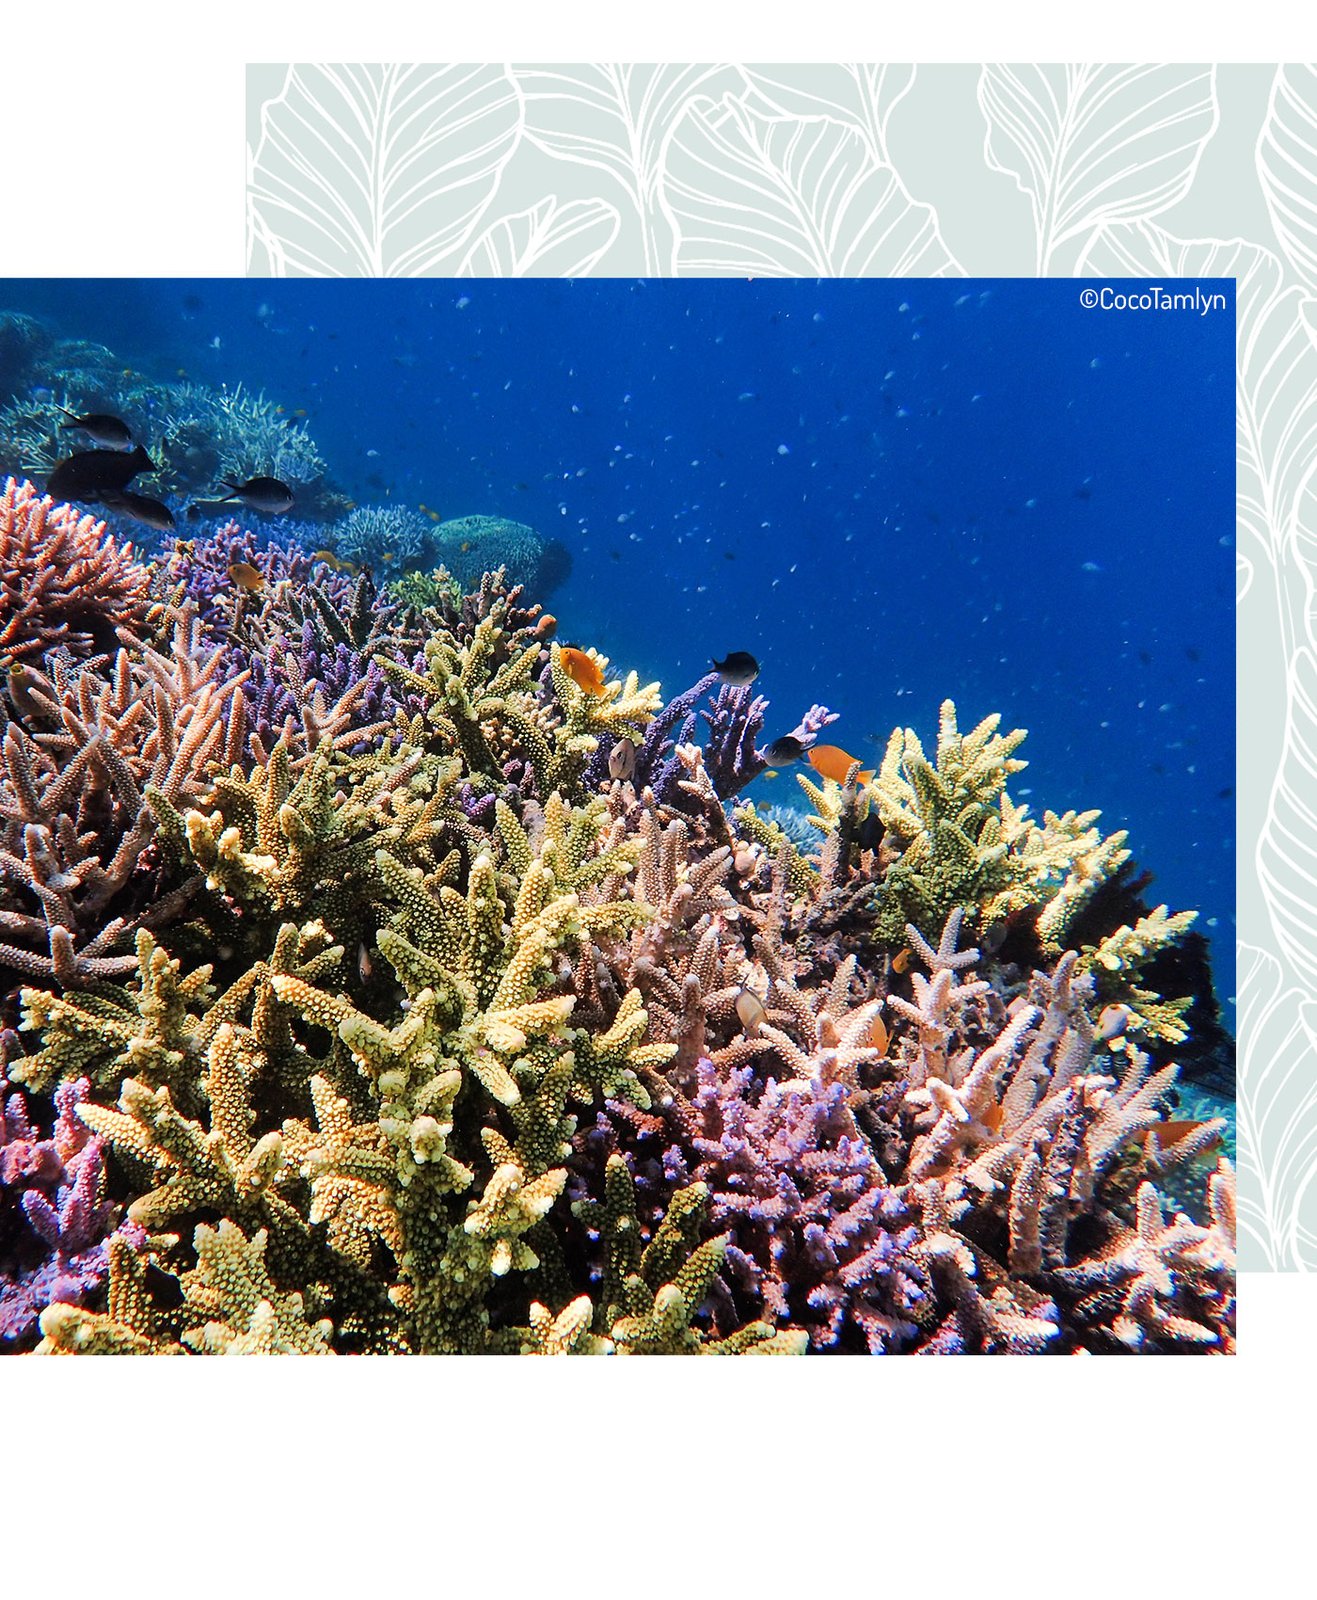 Des coraux et des poissons représentent la biodiversité marine